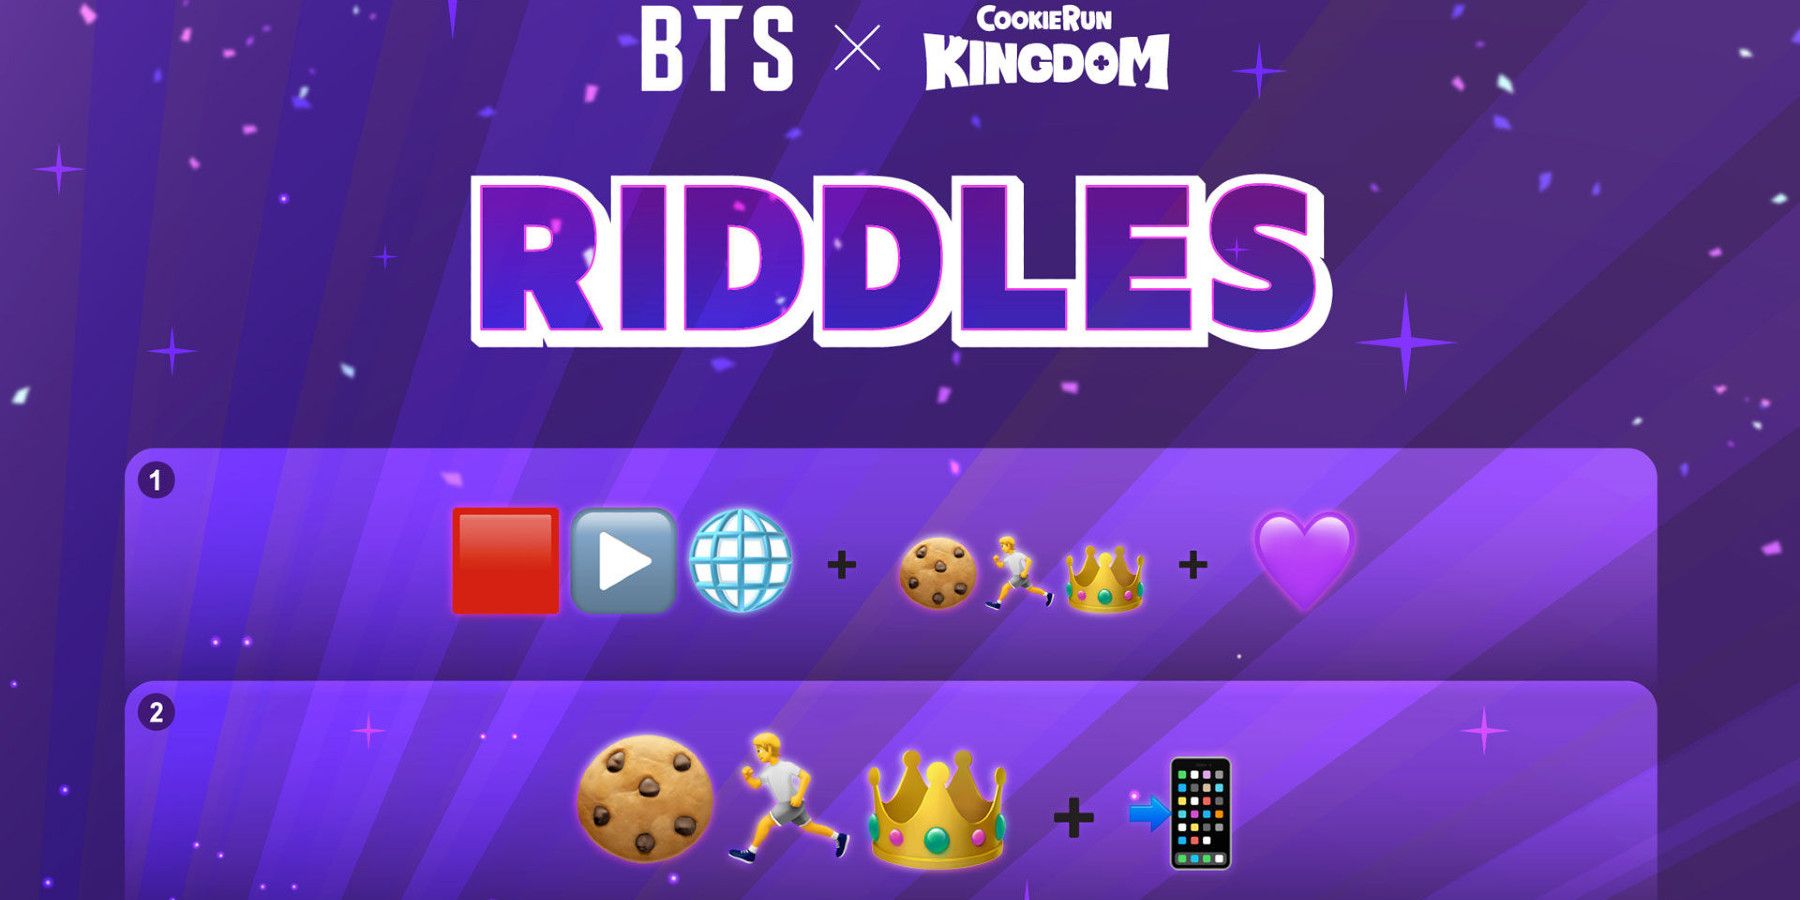 Cookie Run BTS emoji Riddle